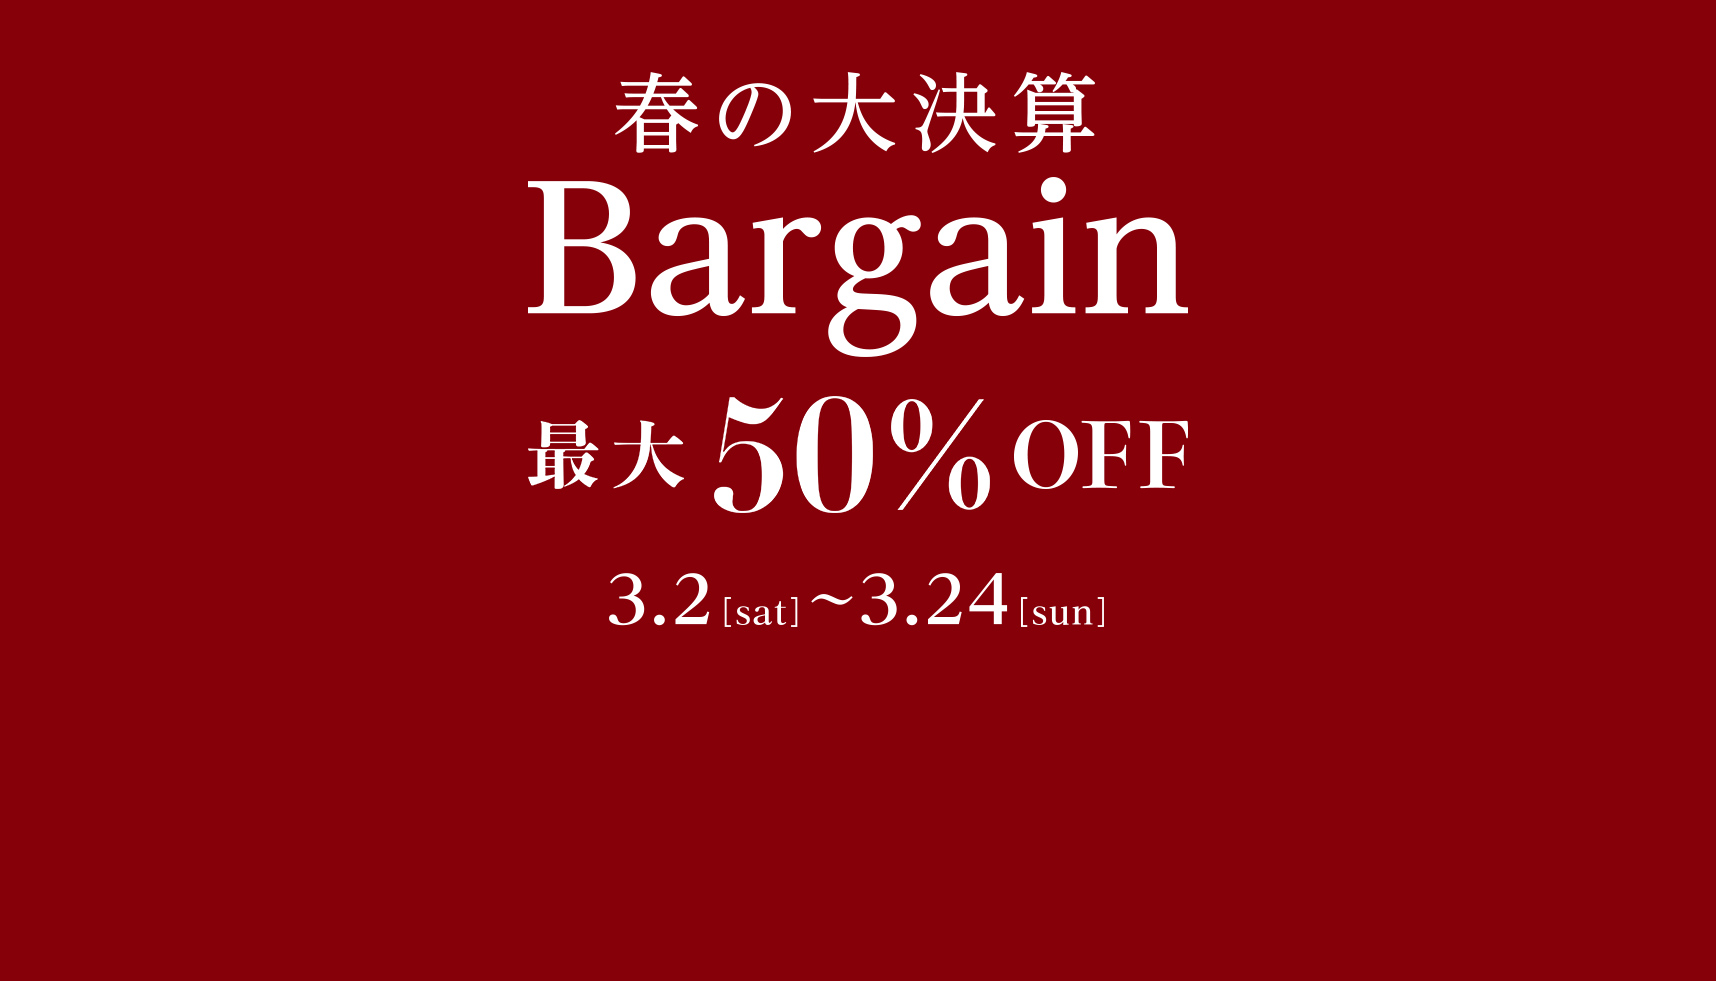 Christmas SALE 最大50%OFF 11.25[sat]-12.25[mon]